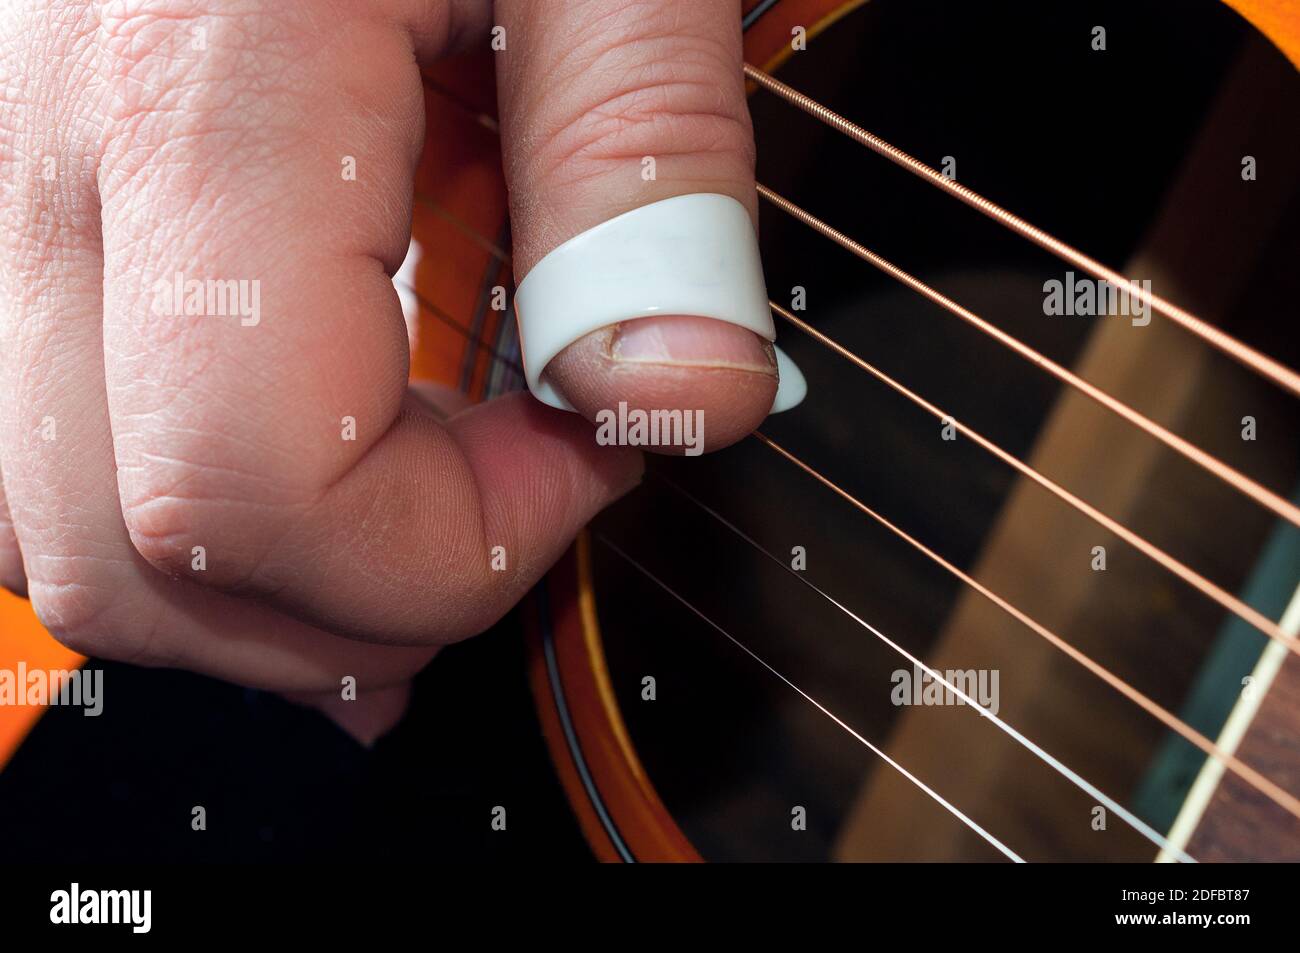 Dettaglio di una mano del chitarrista usando un thumbpick to riproduci la musica con le dita e selezionale con le dita Foto Stock